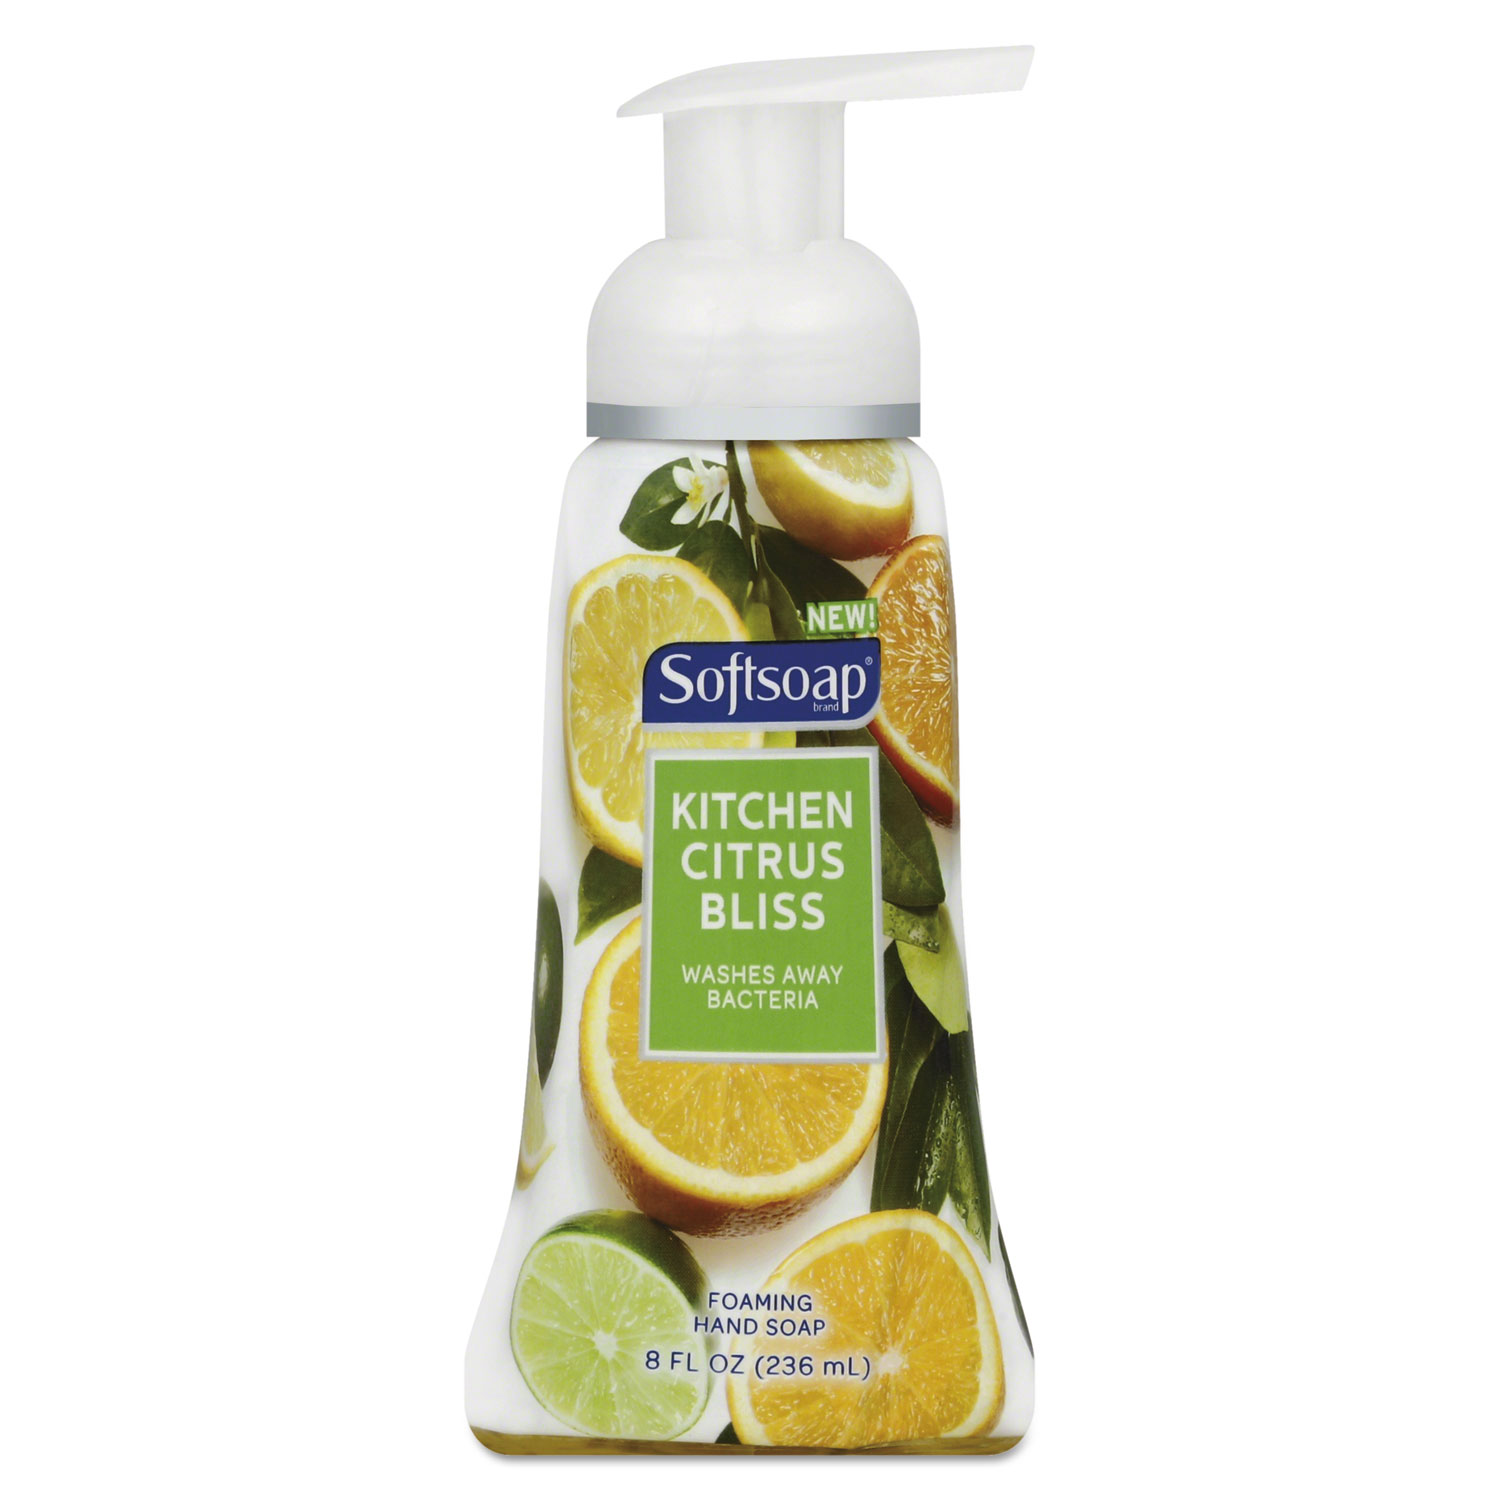  Softsoap 29280 Sensorial Foaming Hand Soap, 8 oz Pump Bottle, Citrus Bliss (CPC29280) 